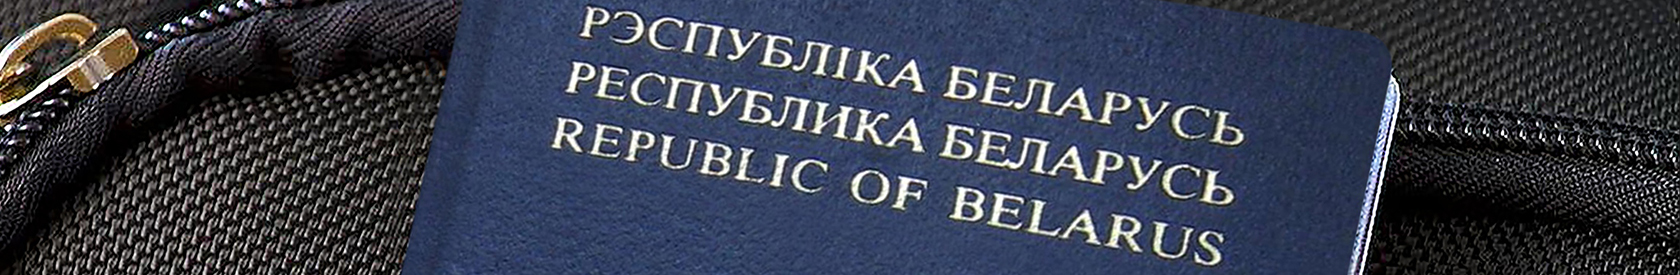 Užsienyje gyvenantys baltarusiai nuo šiol negalės pasikeisti pasų ar notariškai patvirtinti įgaliojimų